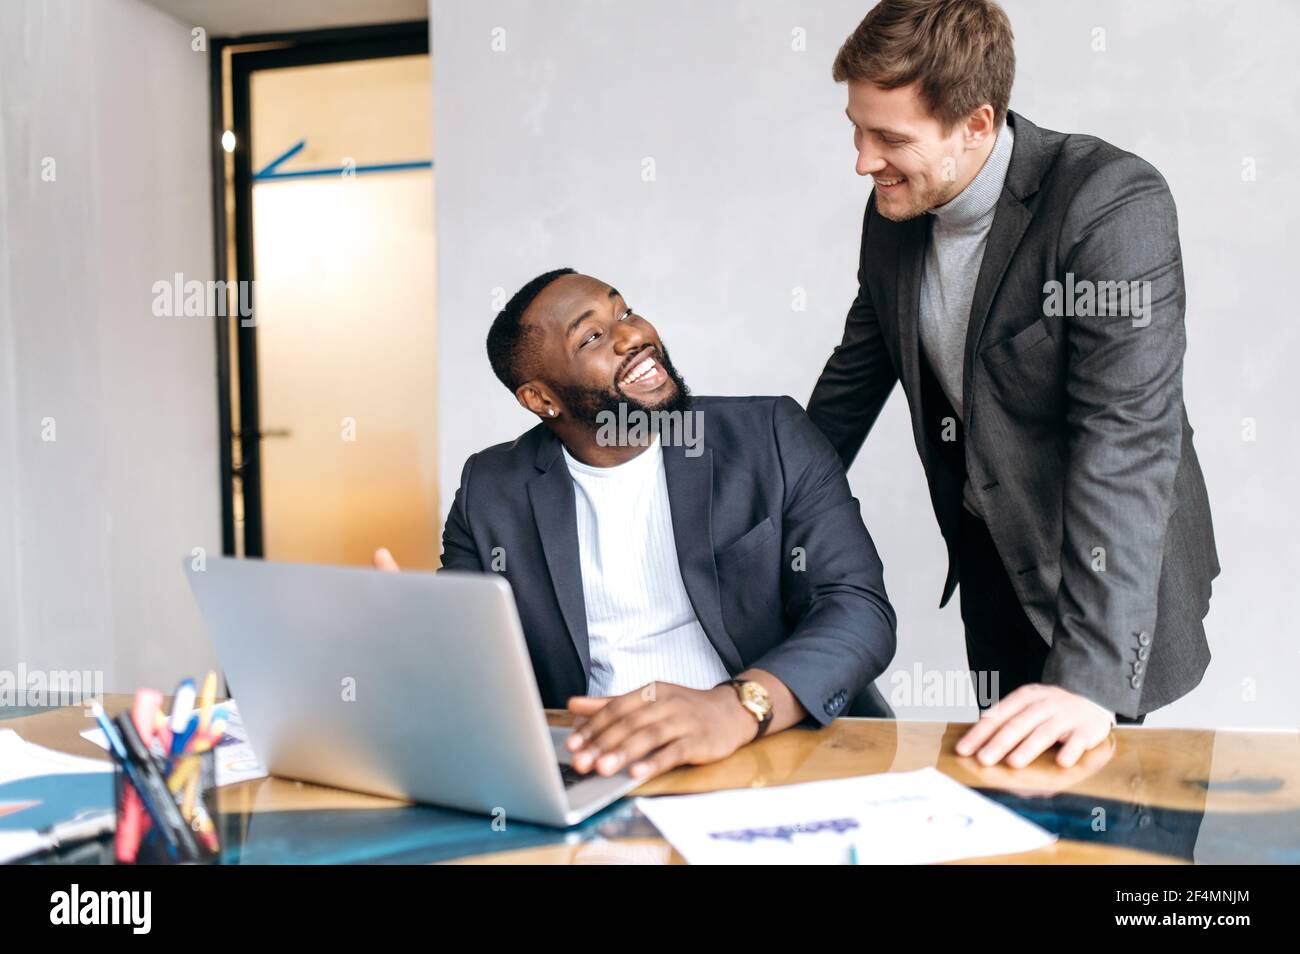 Le persone d'affari felici discutono le domande di lavoro in ufficio, usando il laptop, sviluppando insieme un nuovo progetto. Un impiegato africano americano maschio che chiede un consiglio da un collega caucasico uomo, sorridendo Foto Stock